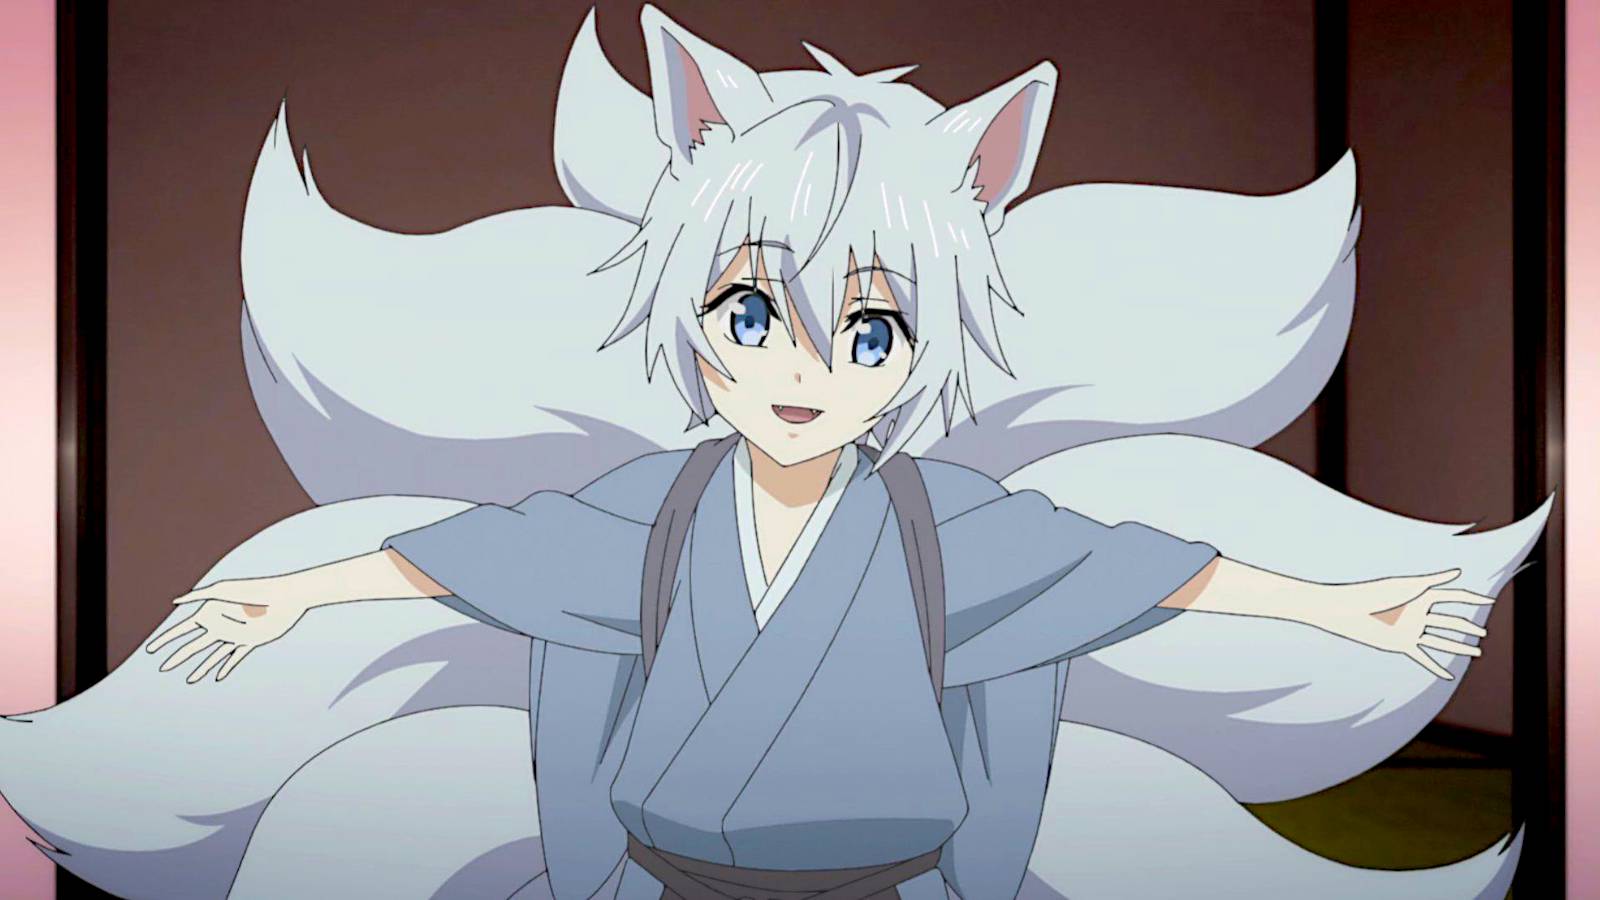 Karasu from soul of yokai | Anime prince, Cute anime guys, Anime couples  manga